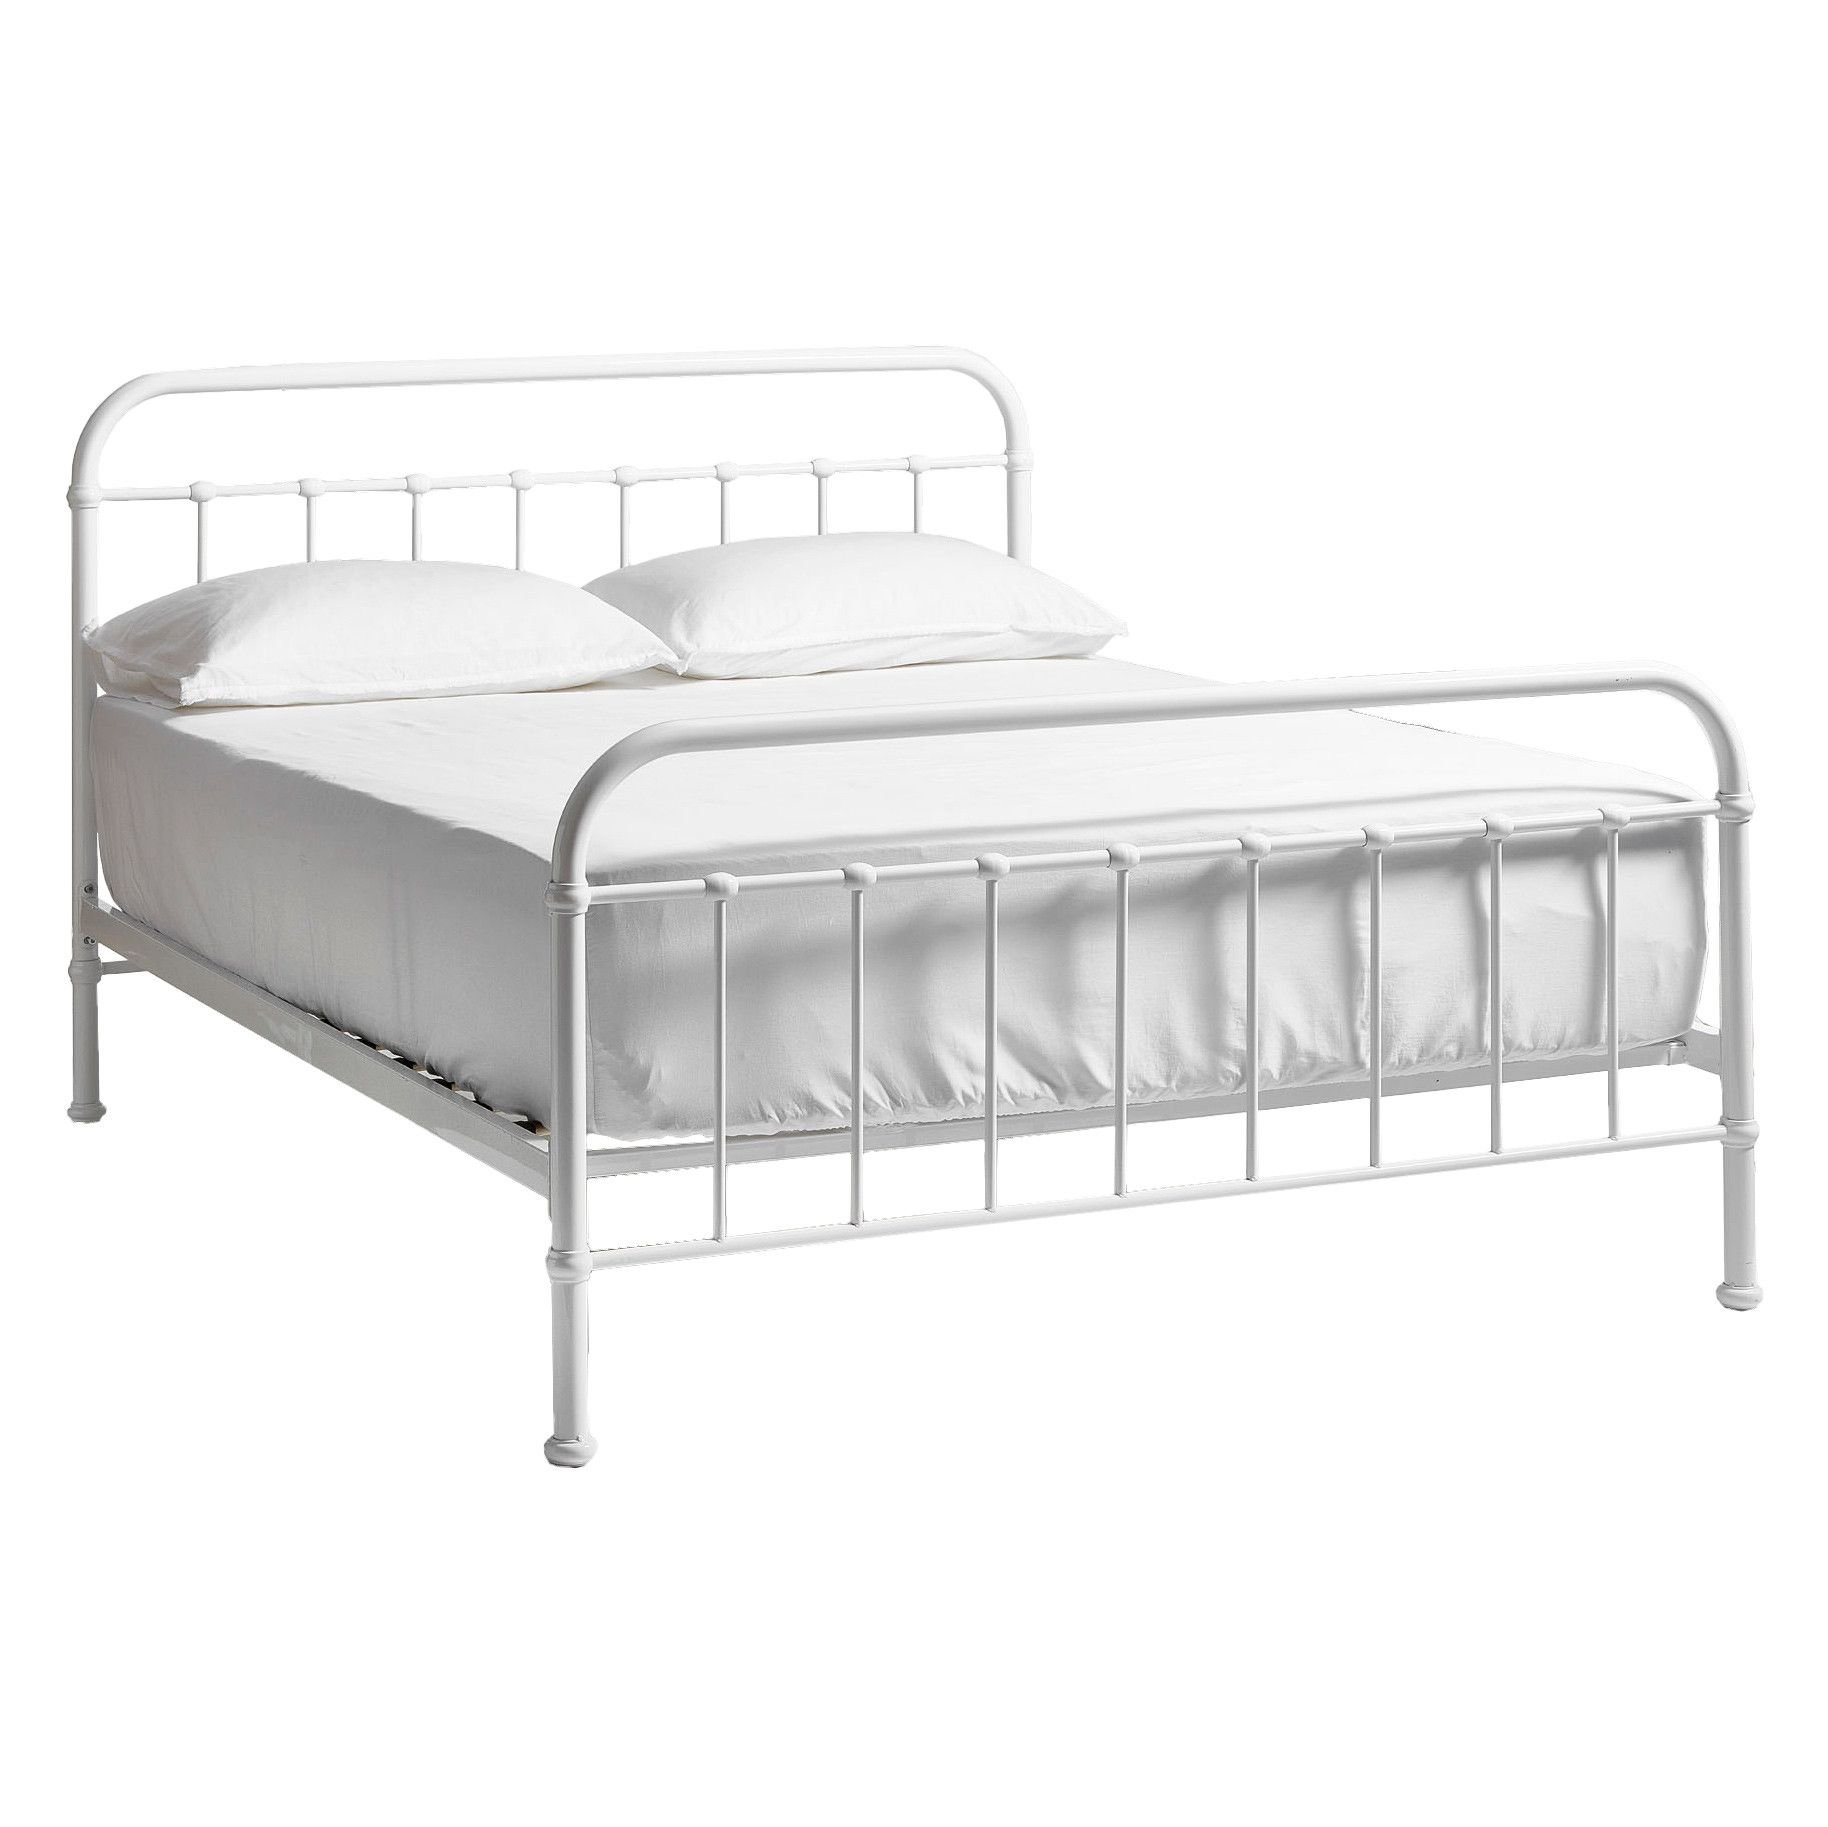 Металлическая кровать с матрасом купить. Железная кровать ikea. Кровать белая металл икея. Икеа железные кровати полуторки. Кровать икеа белая металлическая.